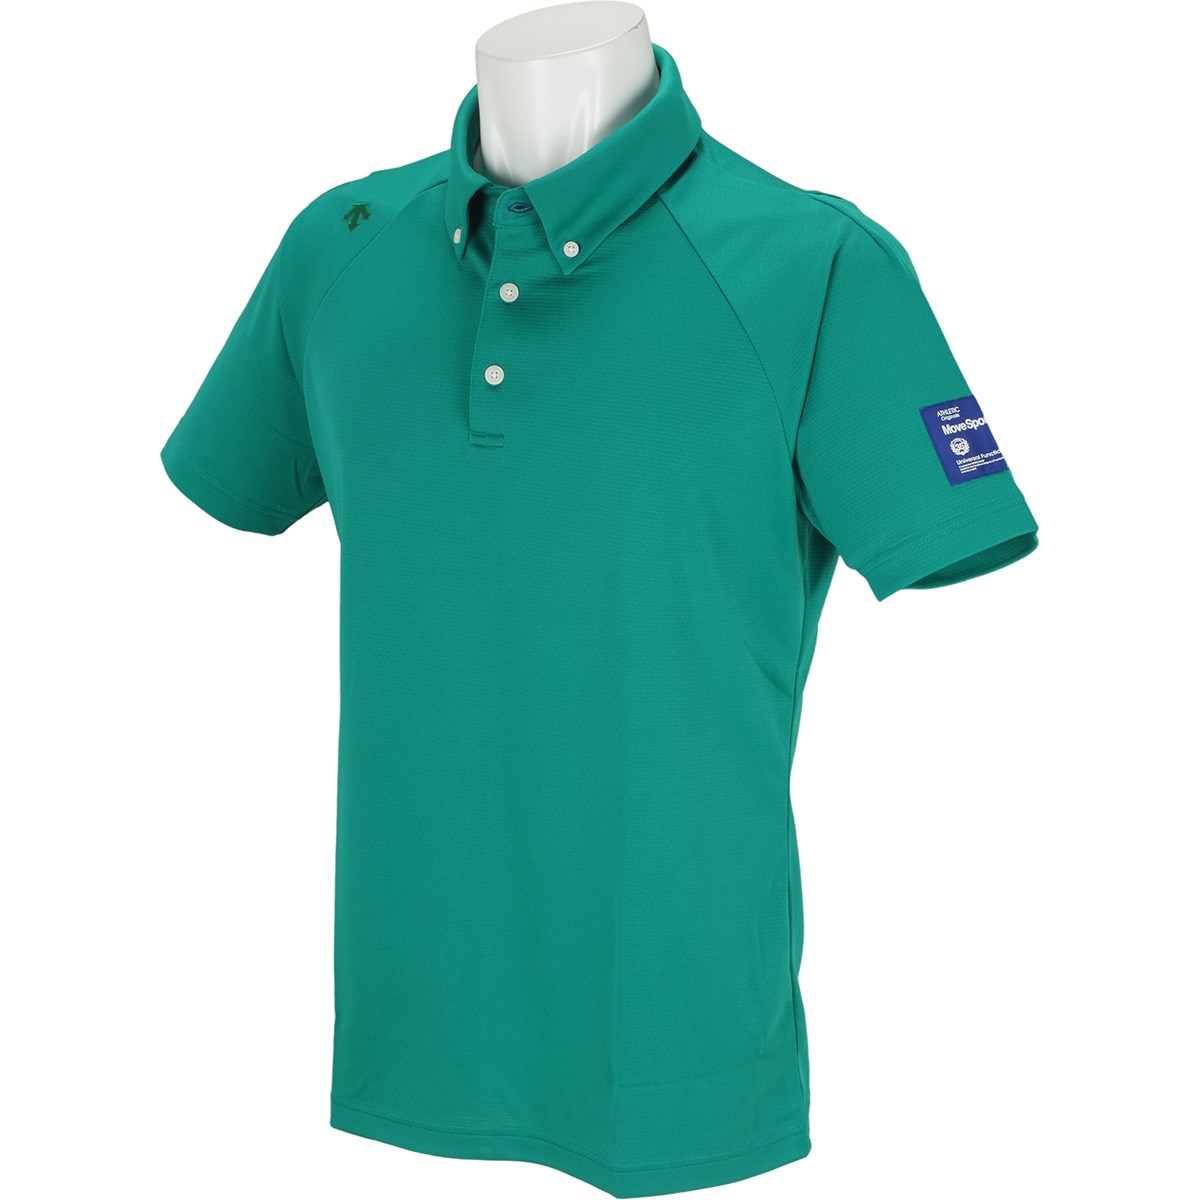 デサントゴルフ(DESCENTE GOLF) シャドーボーダー ボタンダウン半袖ポロシャツ 